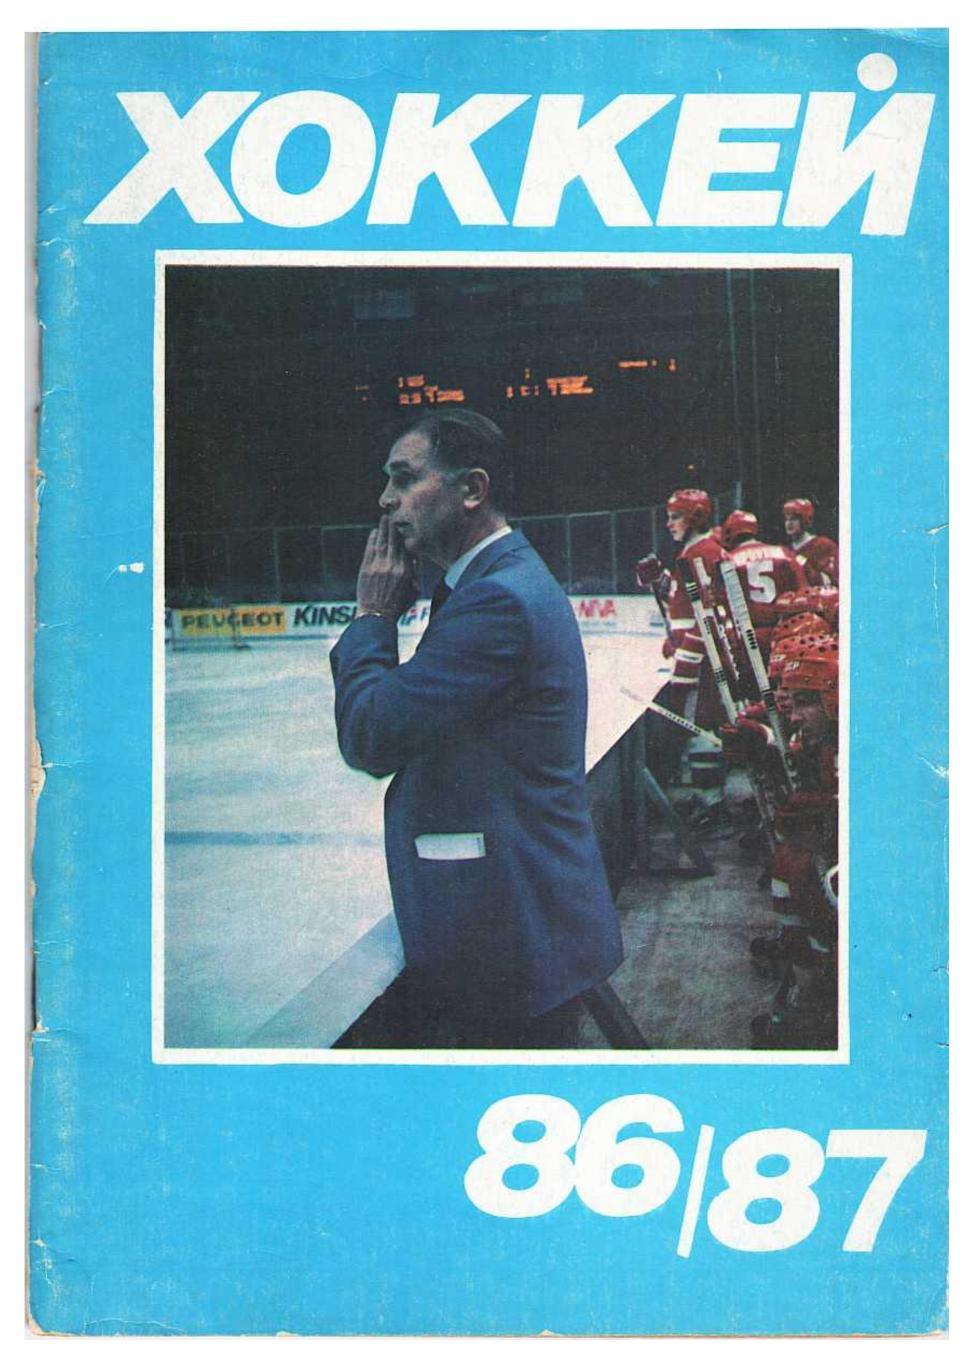 Хоккей 86/87. Издательство «Московская правда»